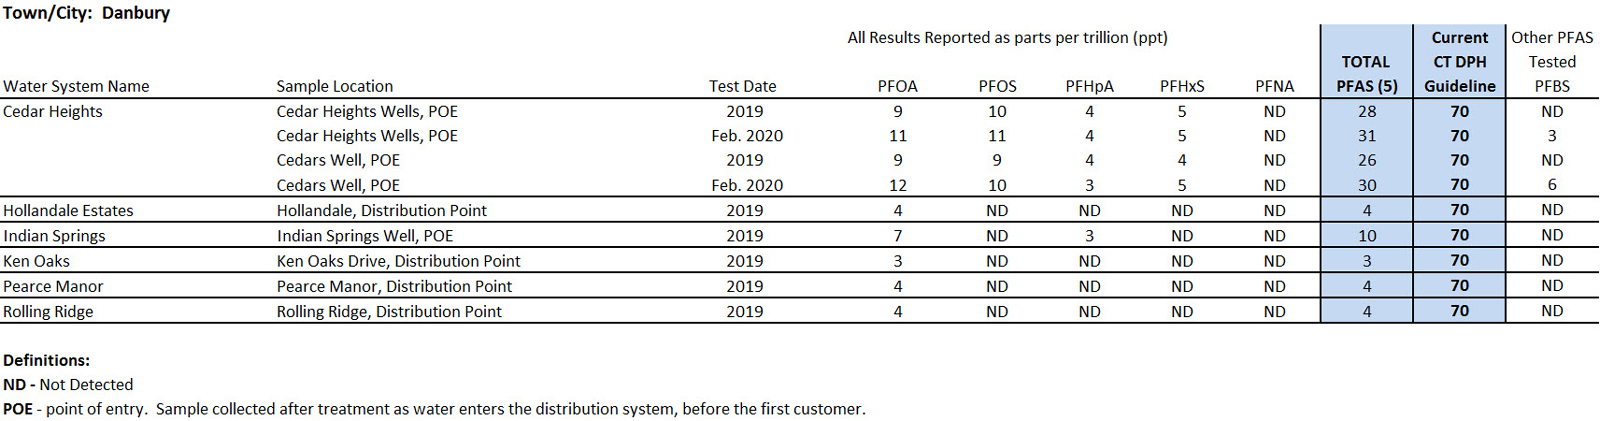 Danbury System PFAS sampling results